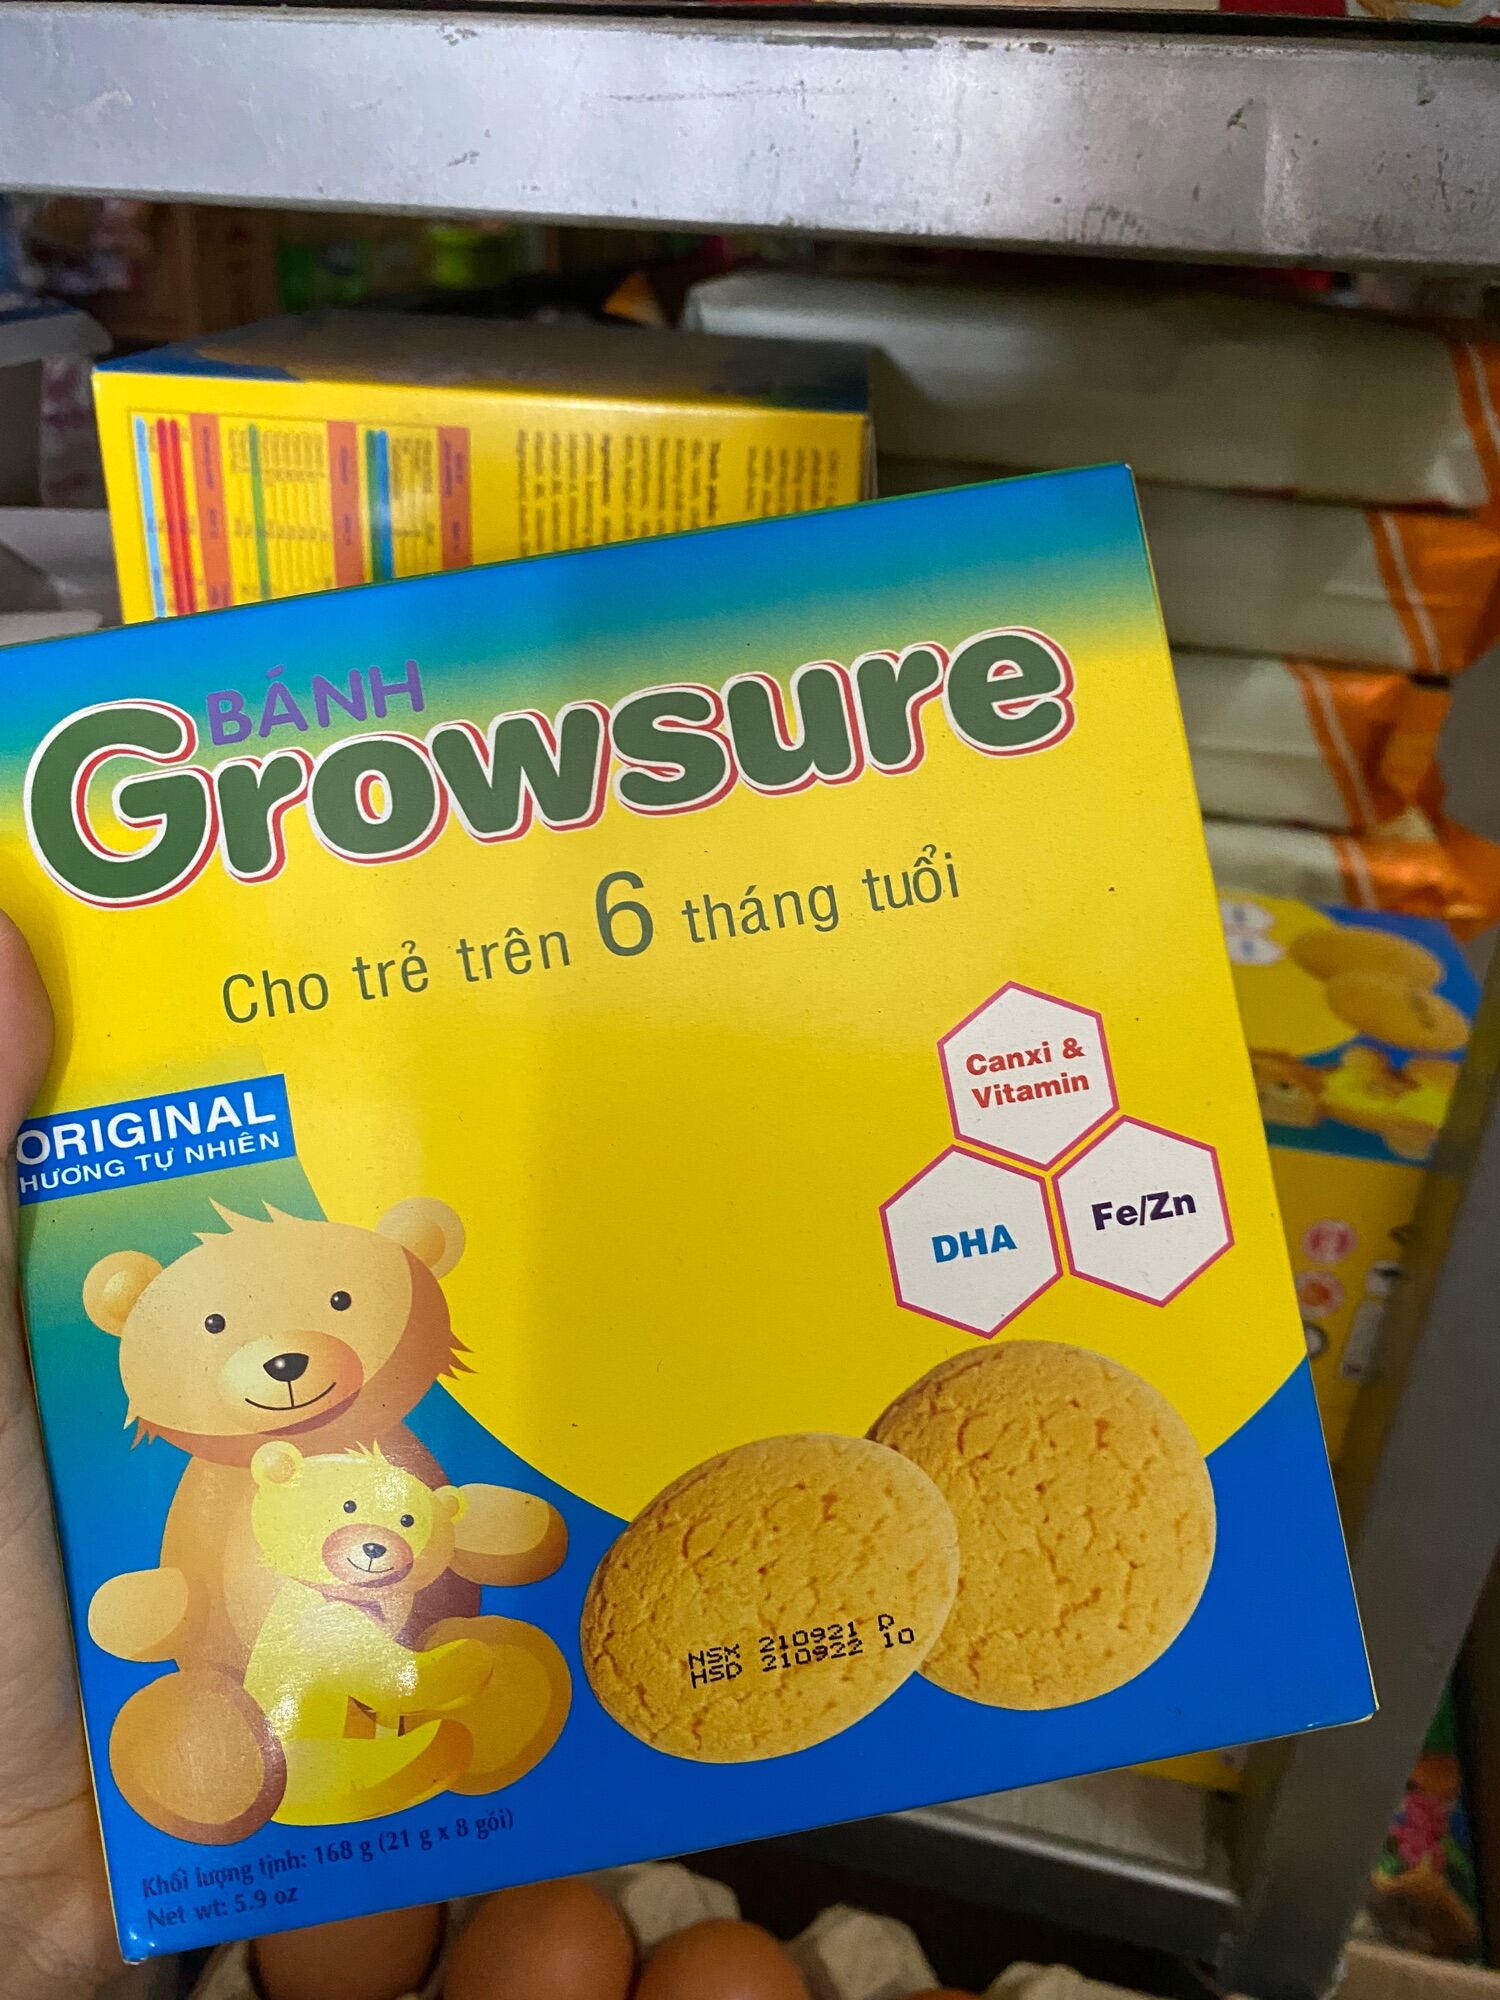 Bánh Ăn Dặm cho trẻ Growsure trên 6 tháng tuổi 168g 8 gói